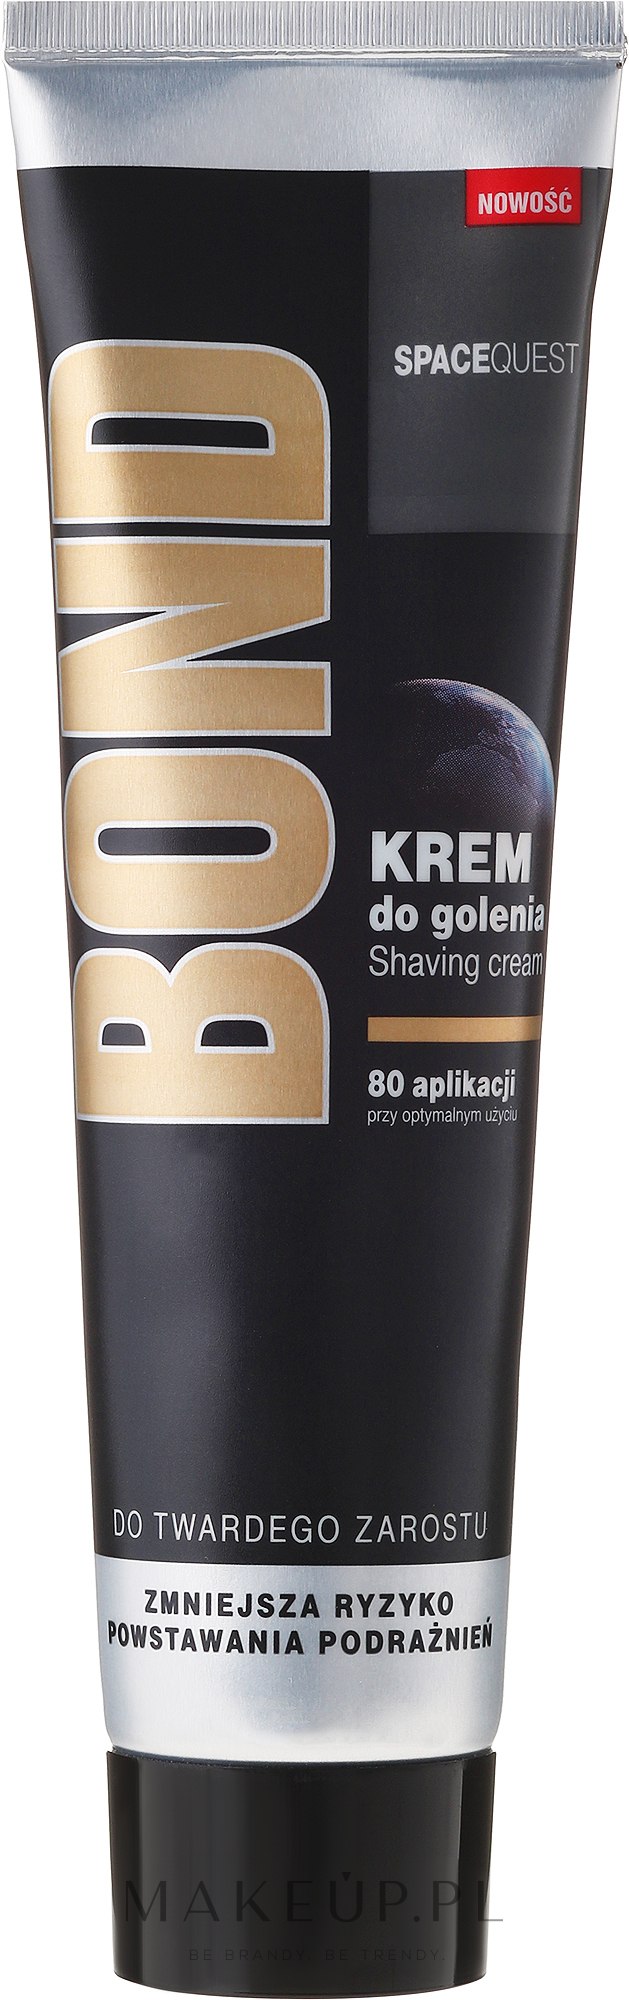 Zmiękczający krem z gliceryną do golenia dla mężczyzn do skóry normalnej - Bond Spacequest — Zdjęcie 100 ml